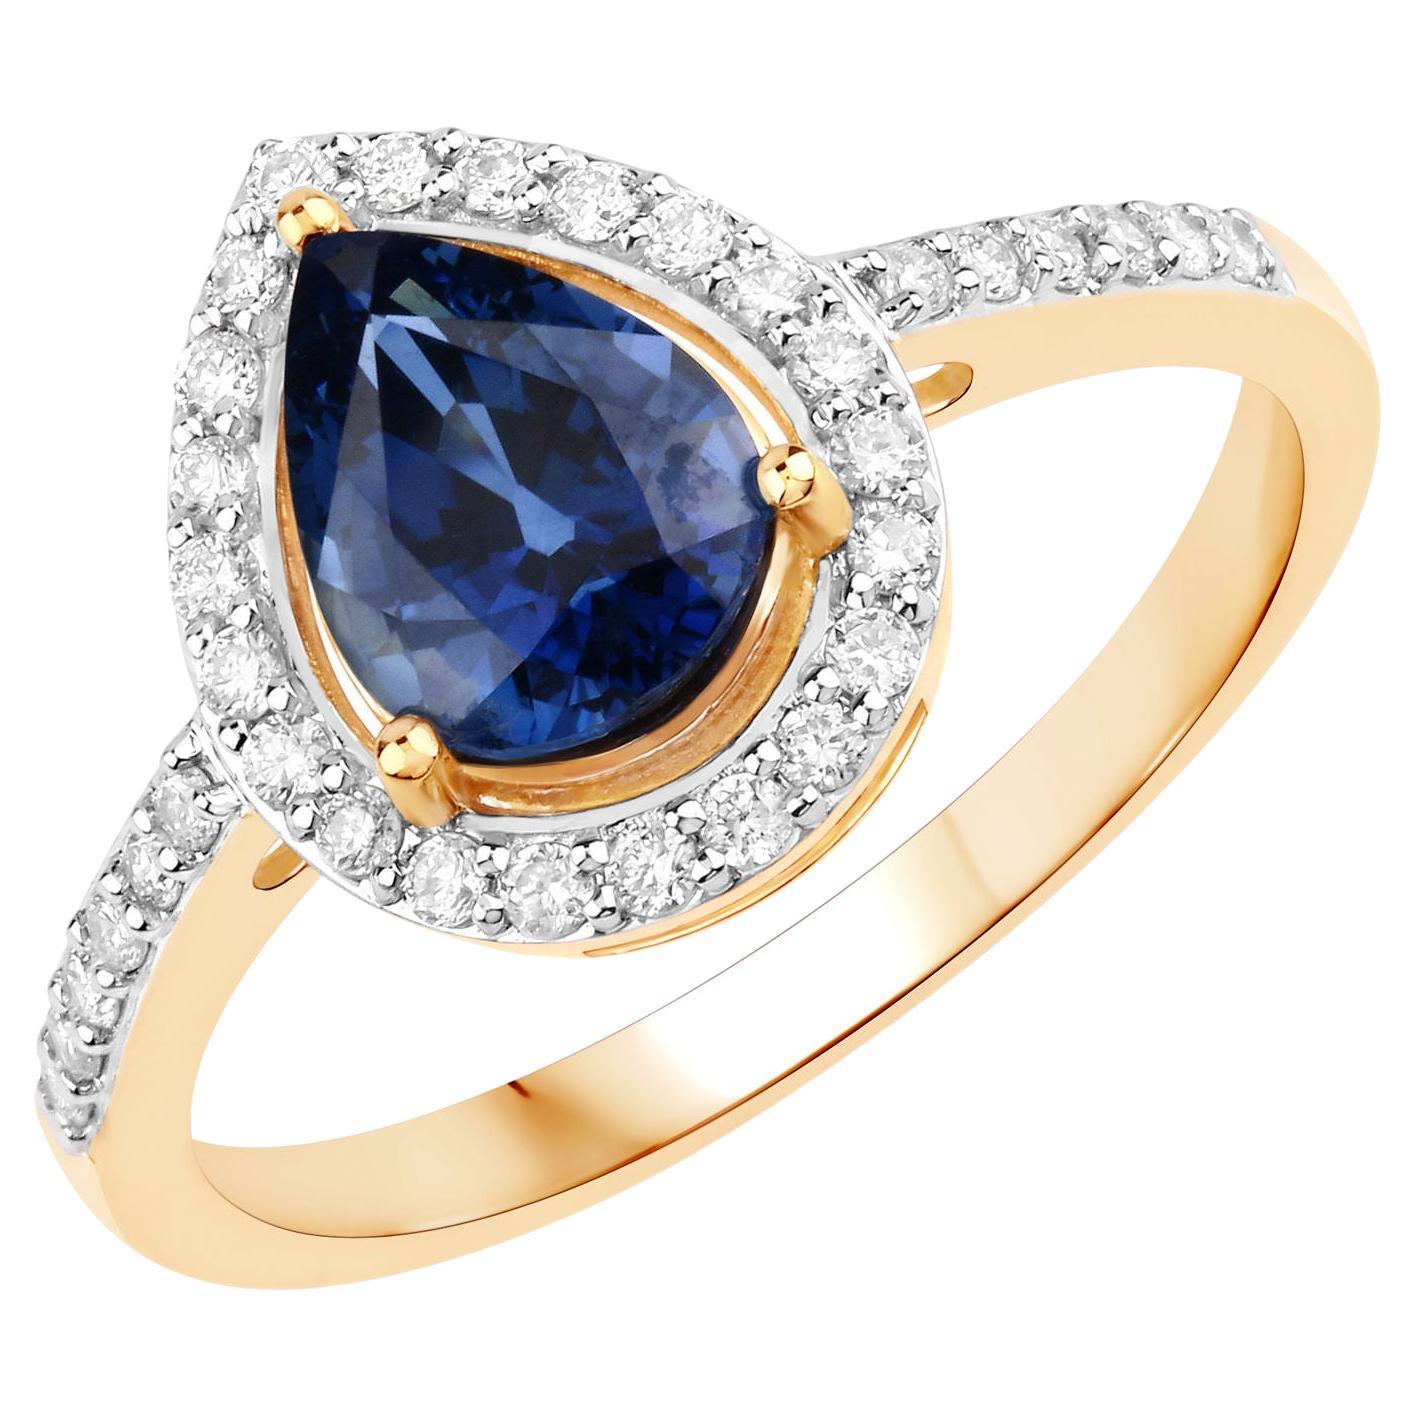 Bague en or jaune 14 carats avec saphir bleu vif en forme de poire et diamants